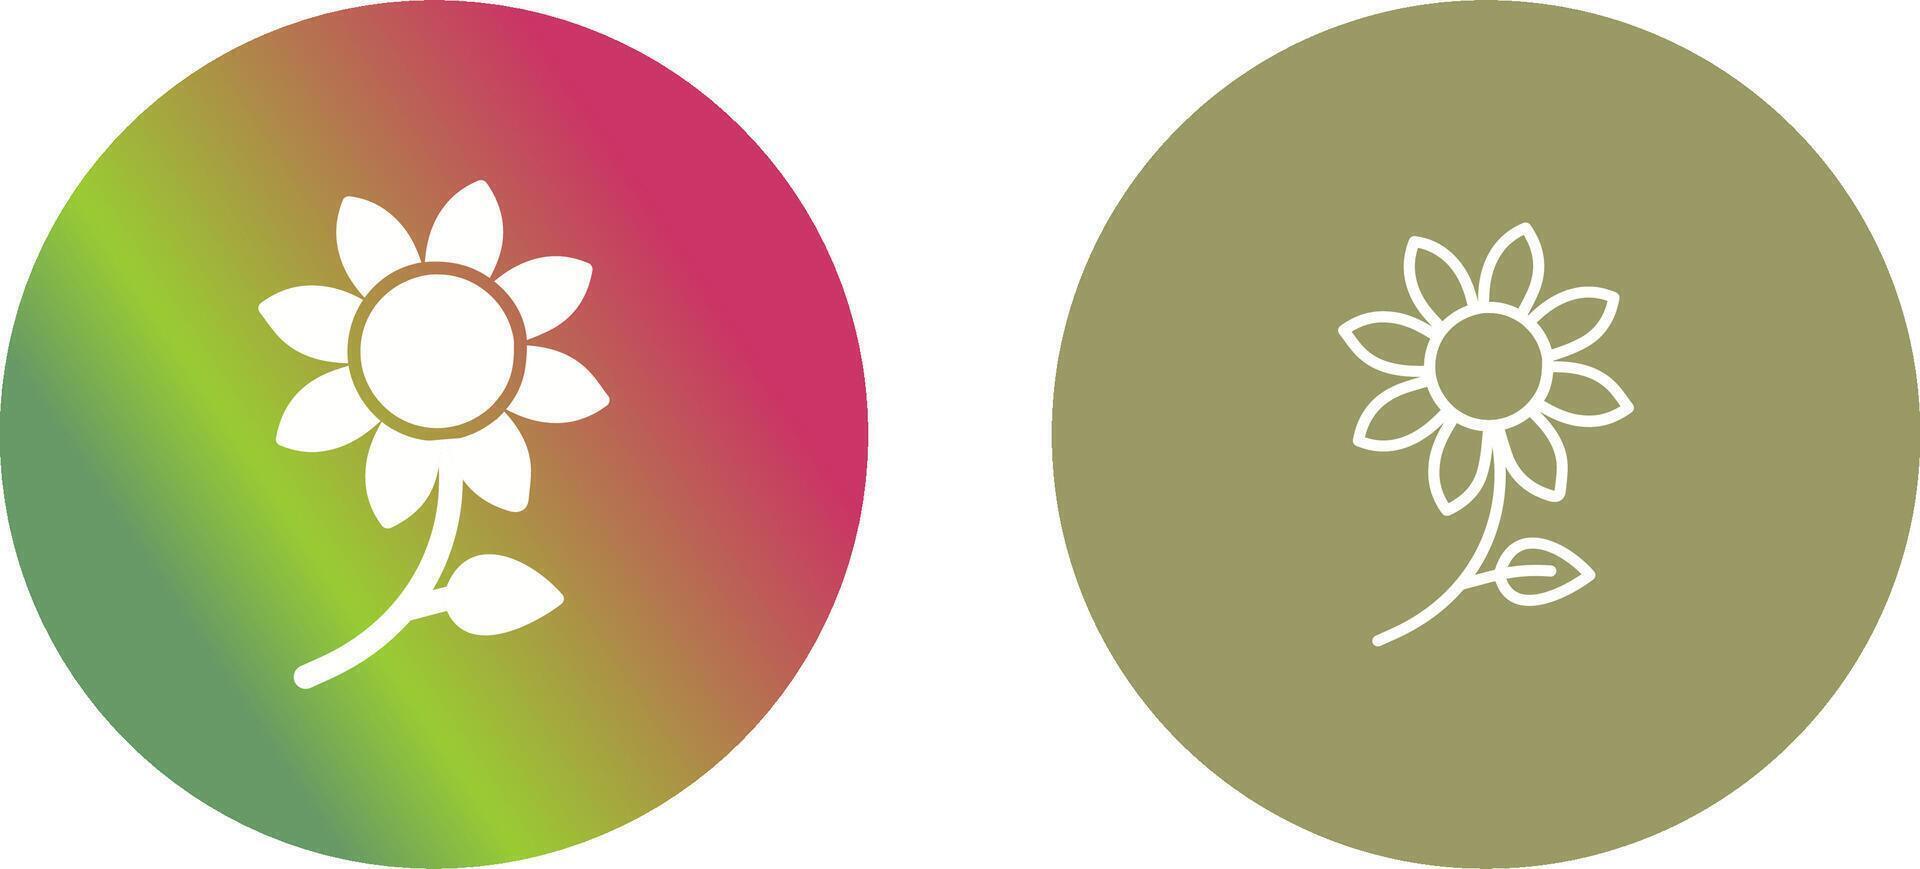 bloemen icoon ontwerp vector